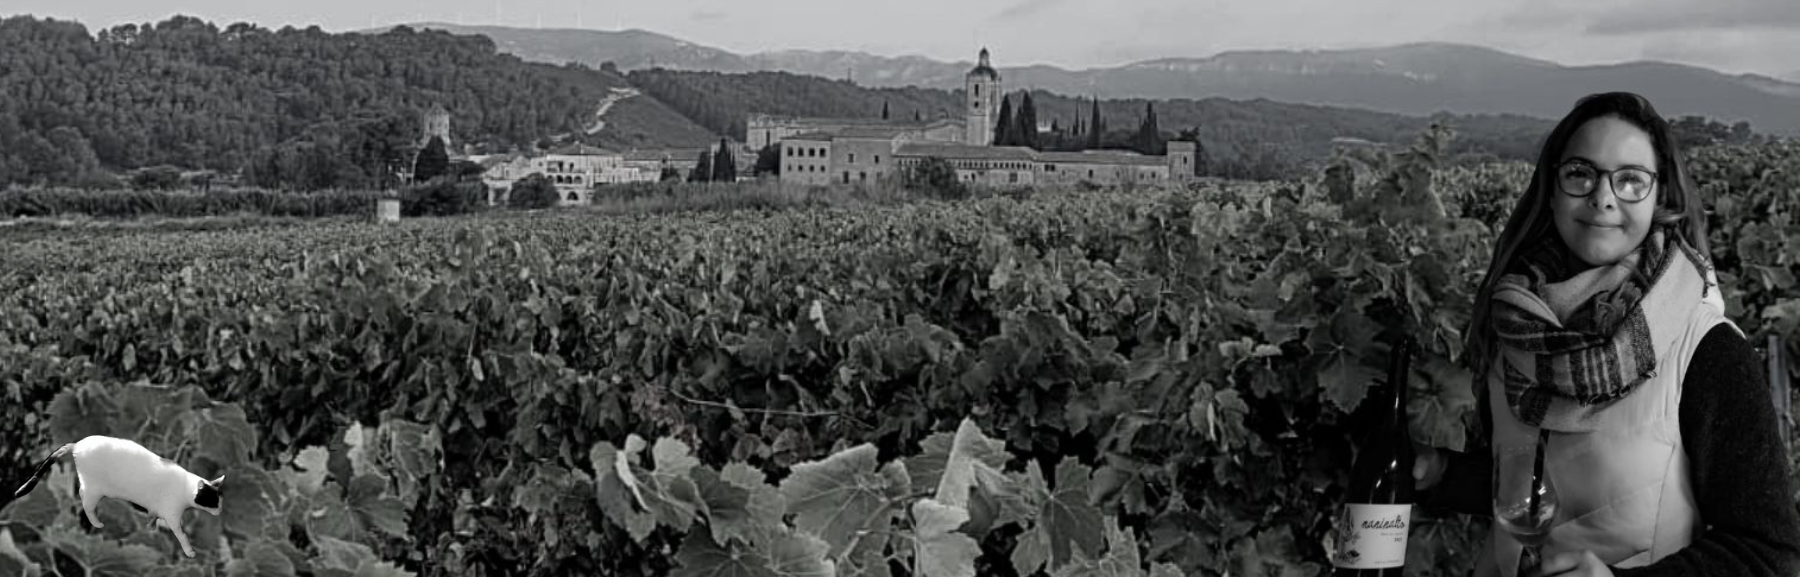 Vins naturels Joanna Dubrawska - Maninalto